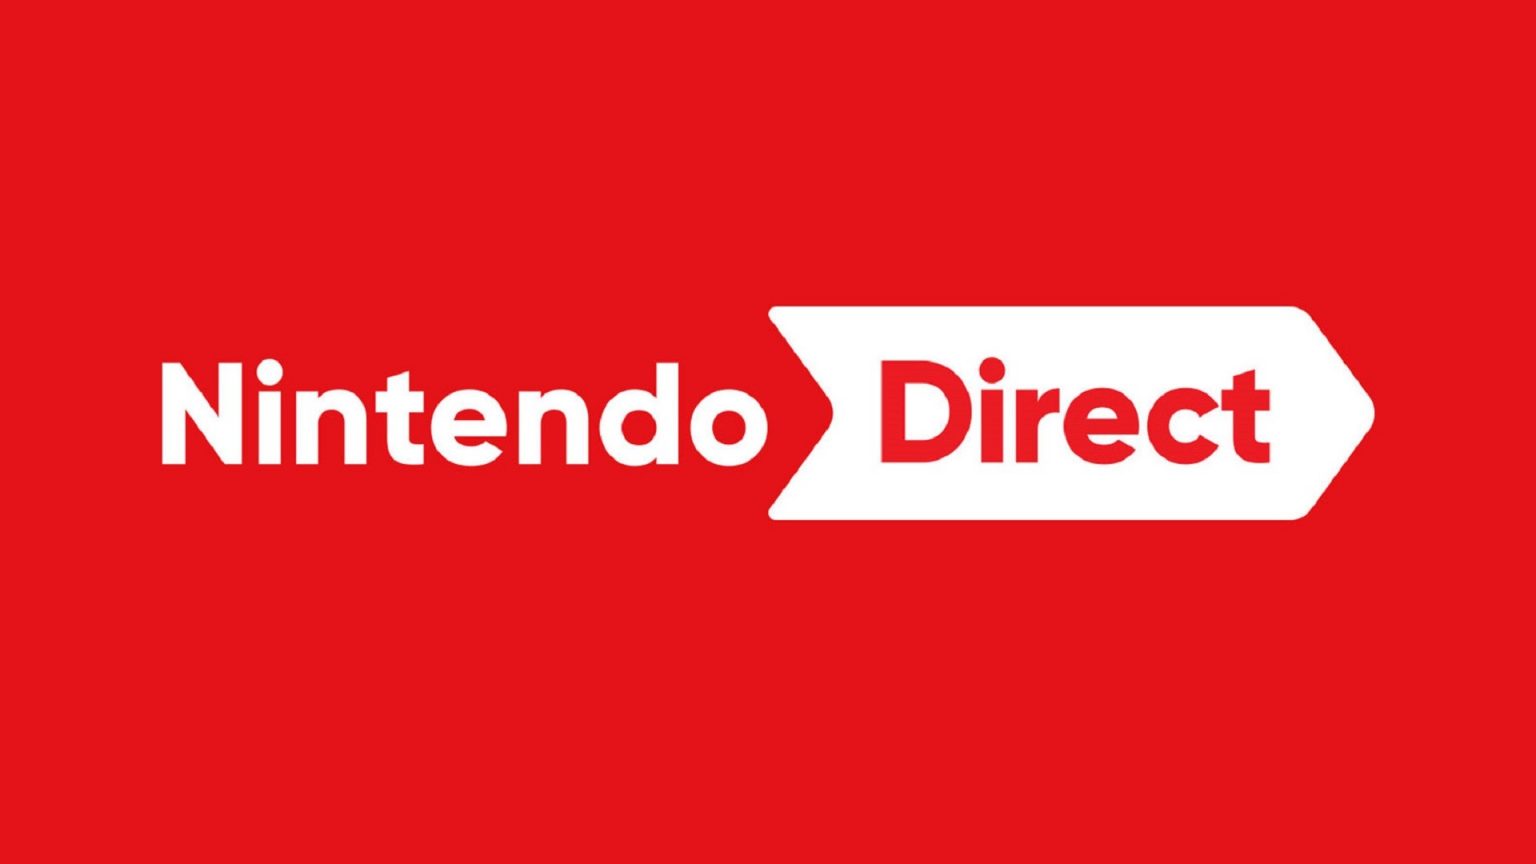 شایعه: رویداد Nintendo Direct در ماه سپتامبر برگزار خواهد شد